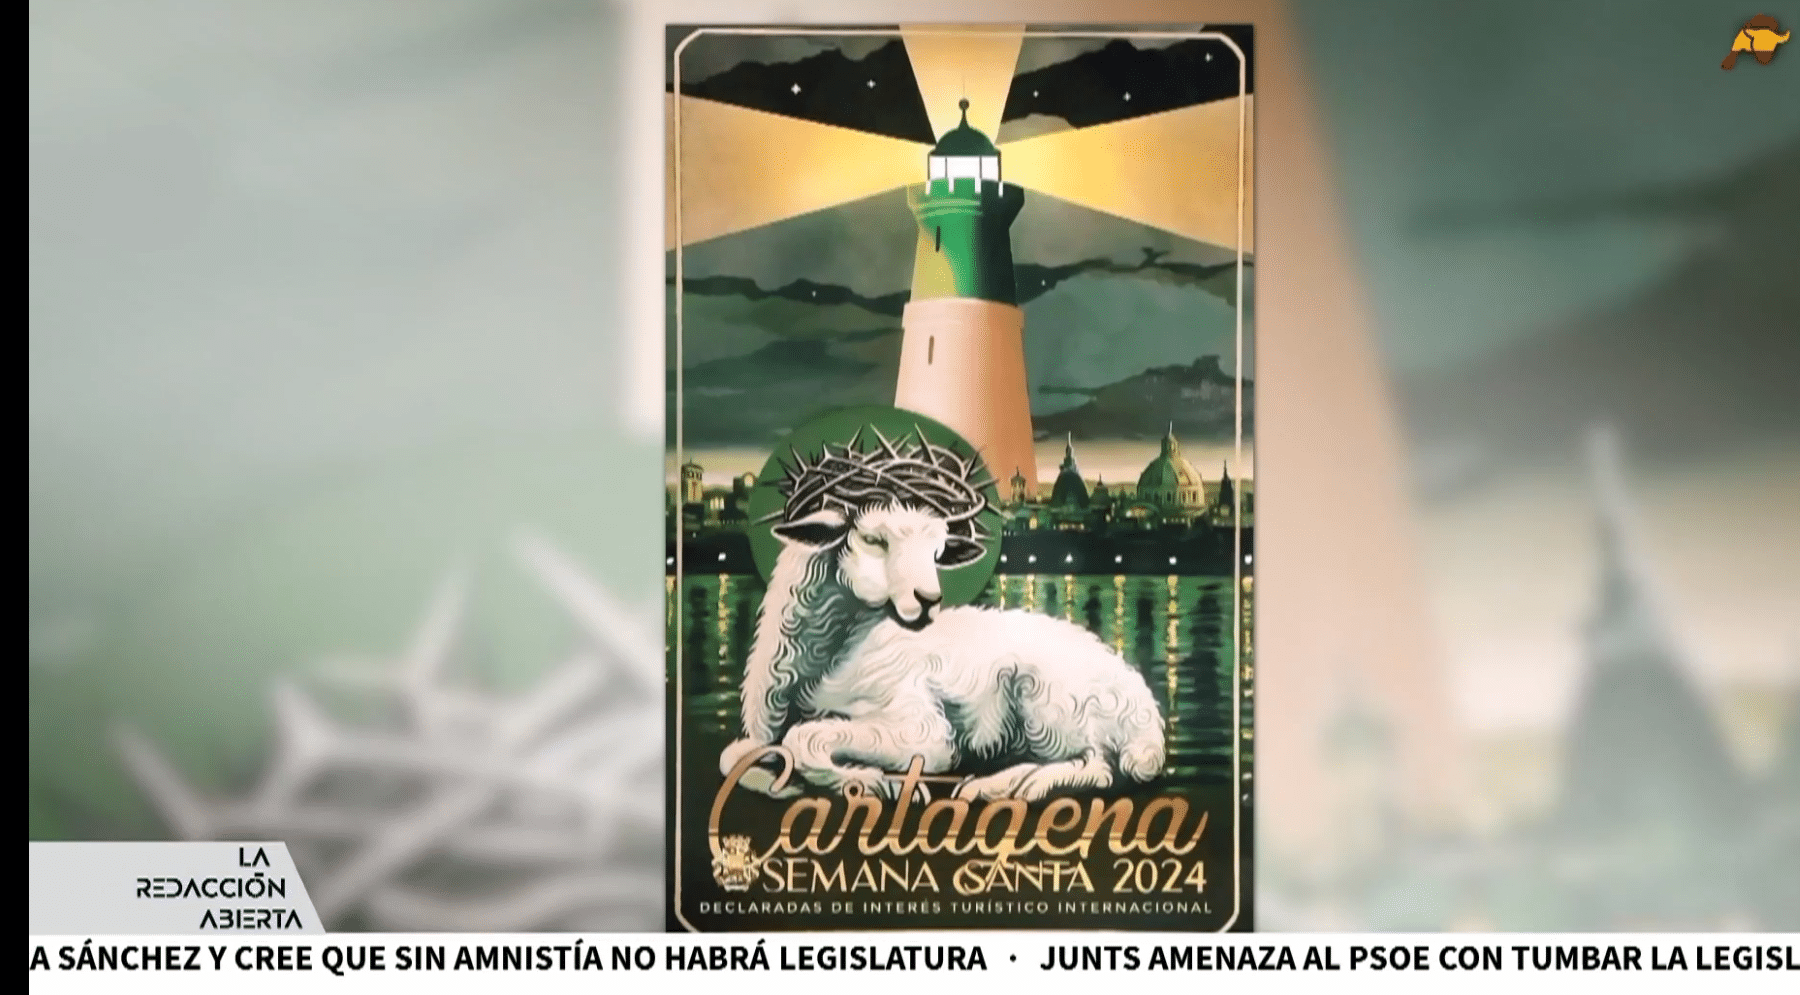 Polémica por el cartel de Semana Santa de Cartagena por su falta de símbolos religiosos